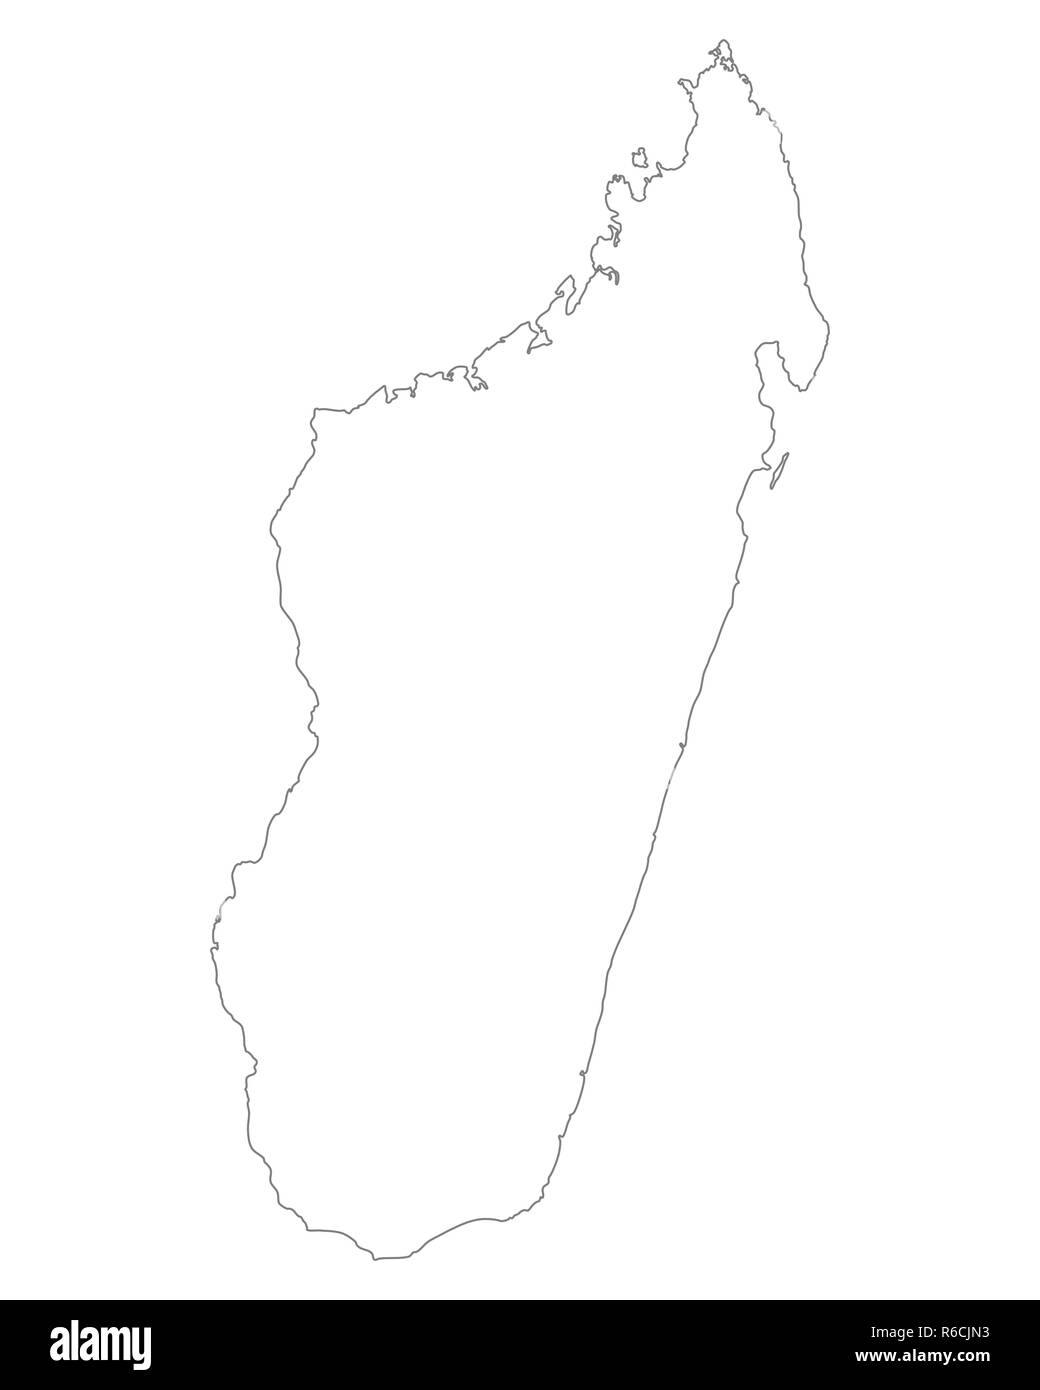 map of madagascar Stock Photo